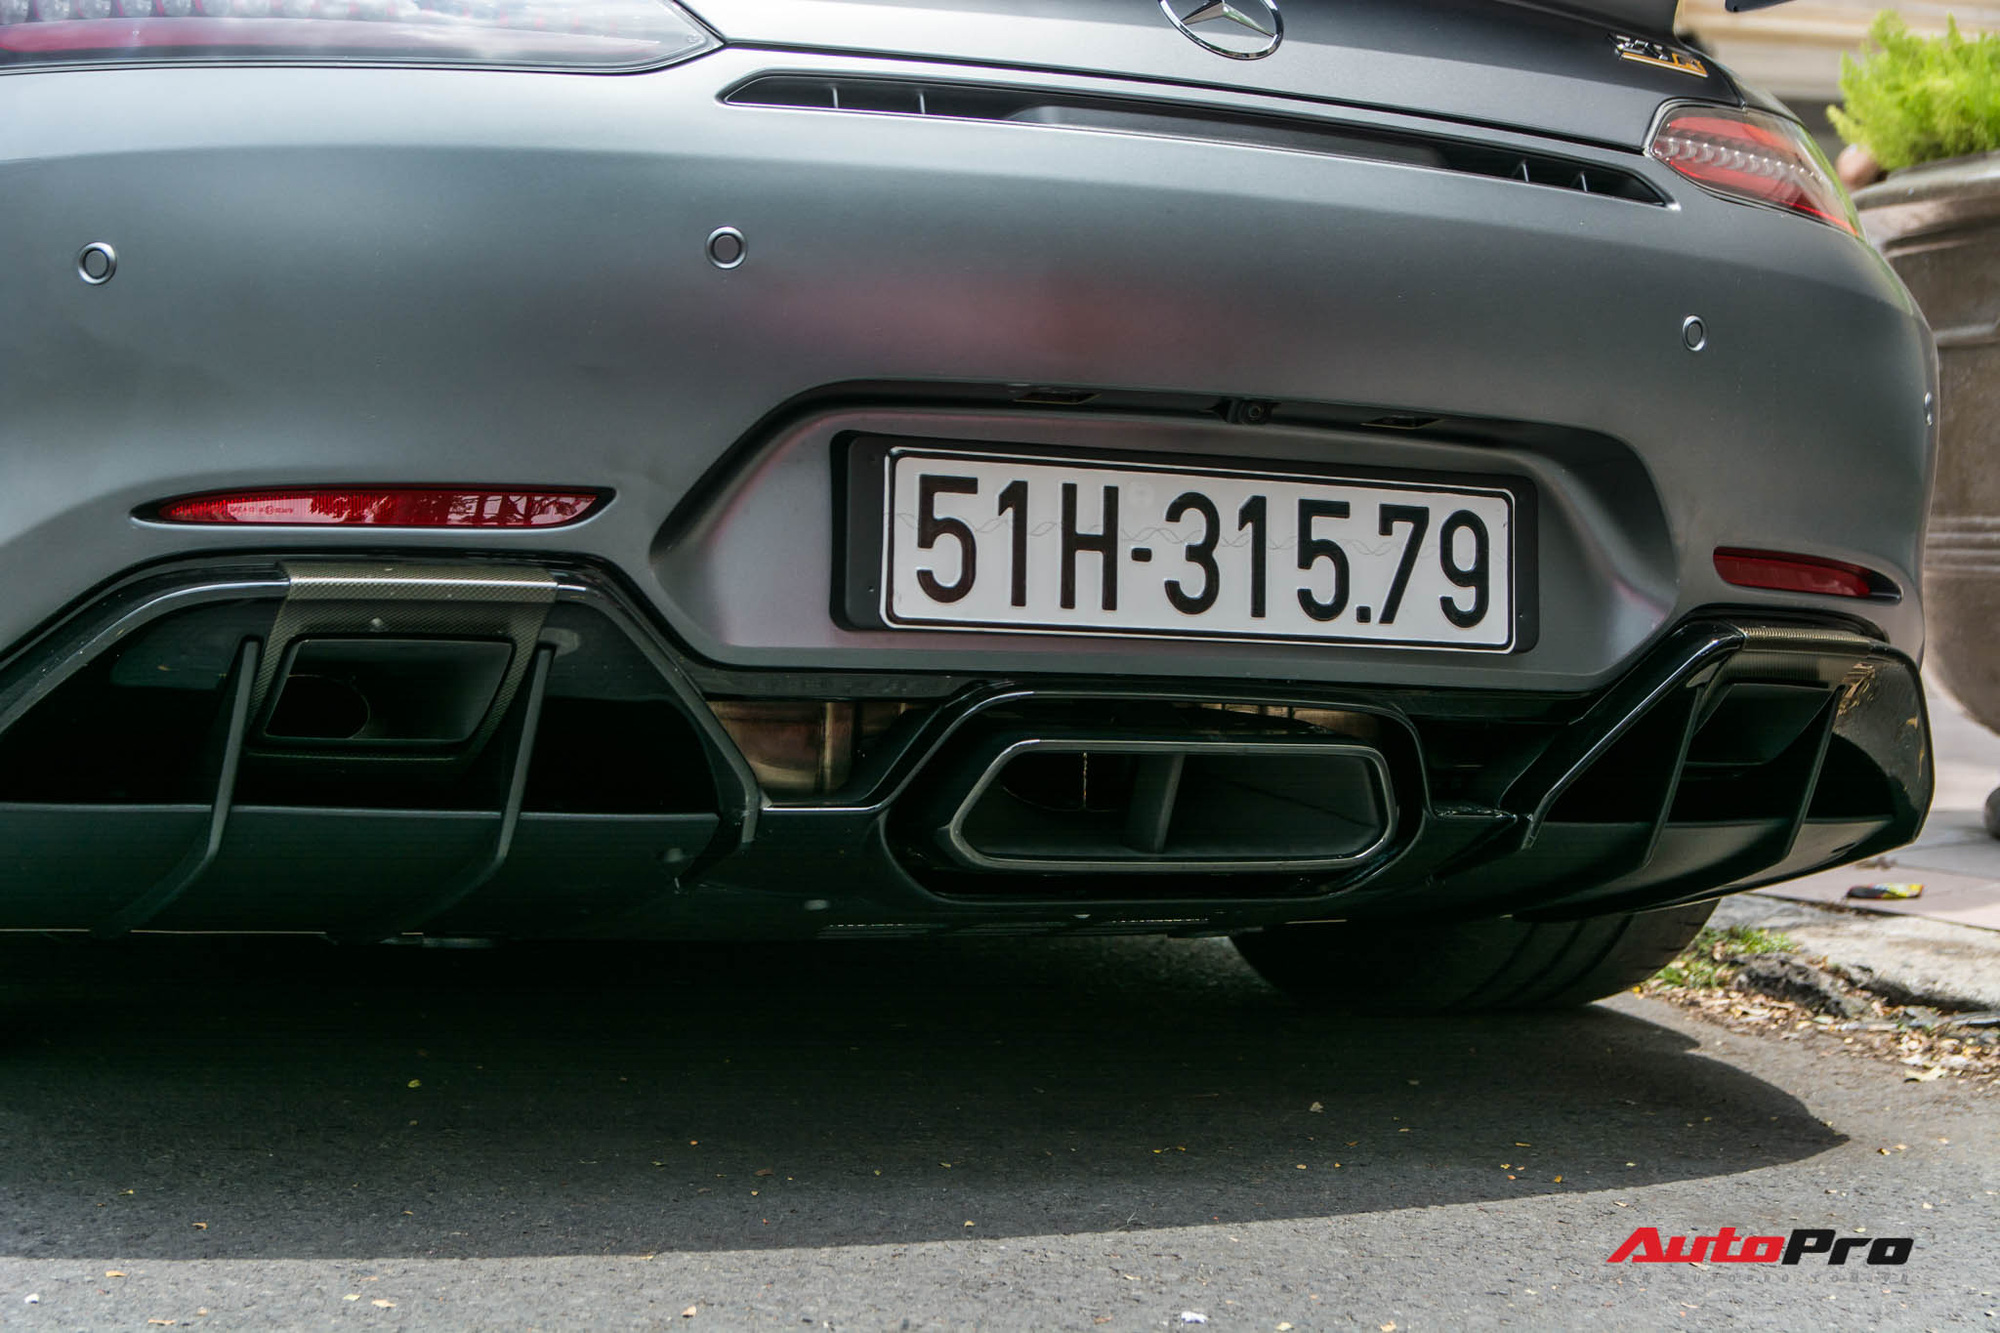 Bóc tách tùy chọn trên Mercedes-AMG GT R của doanh nhân Nguyễn Quốc Cường: Riêng màu sơn đã ngang ngửa một chiếc Honda SH - Ảnh 8.